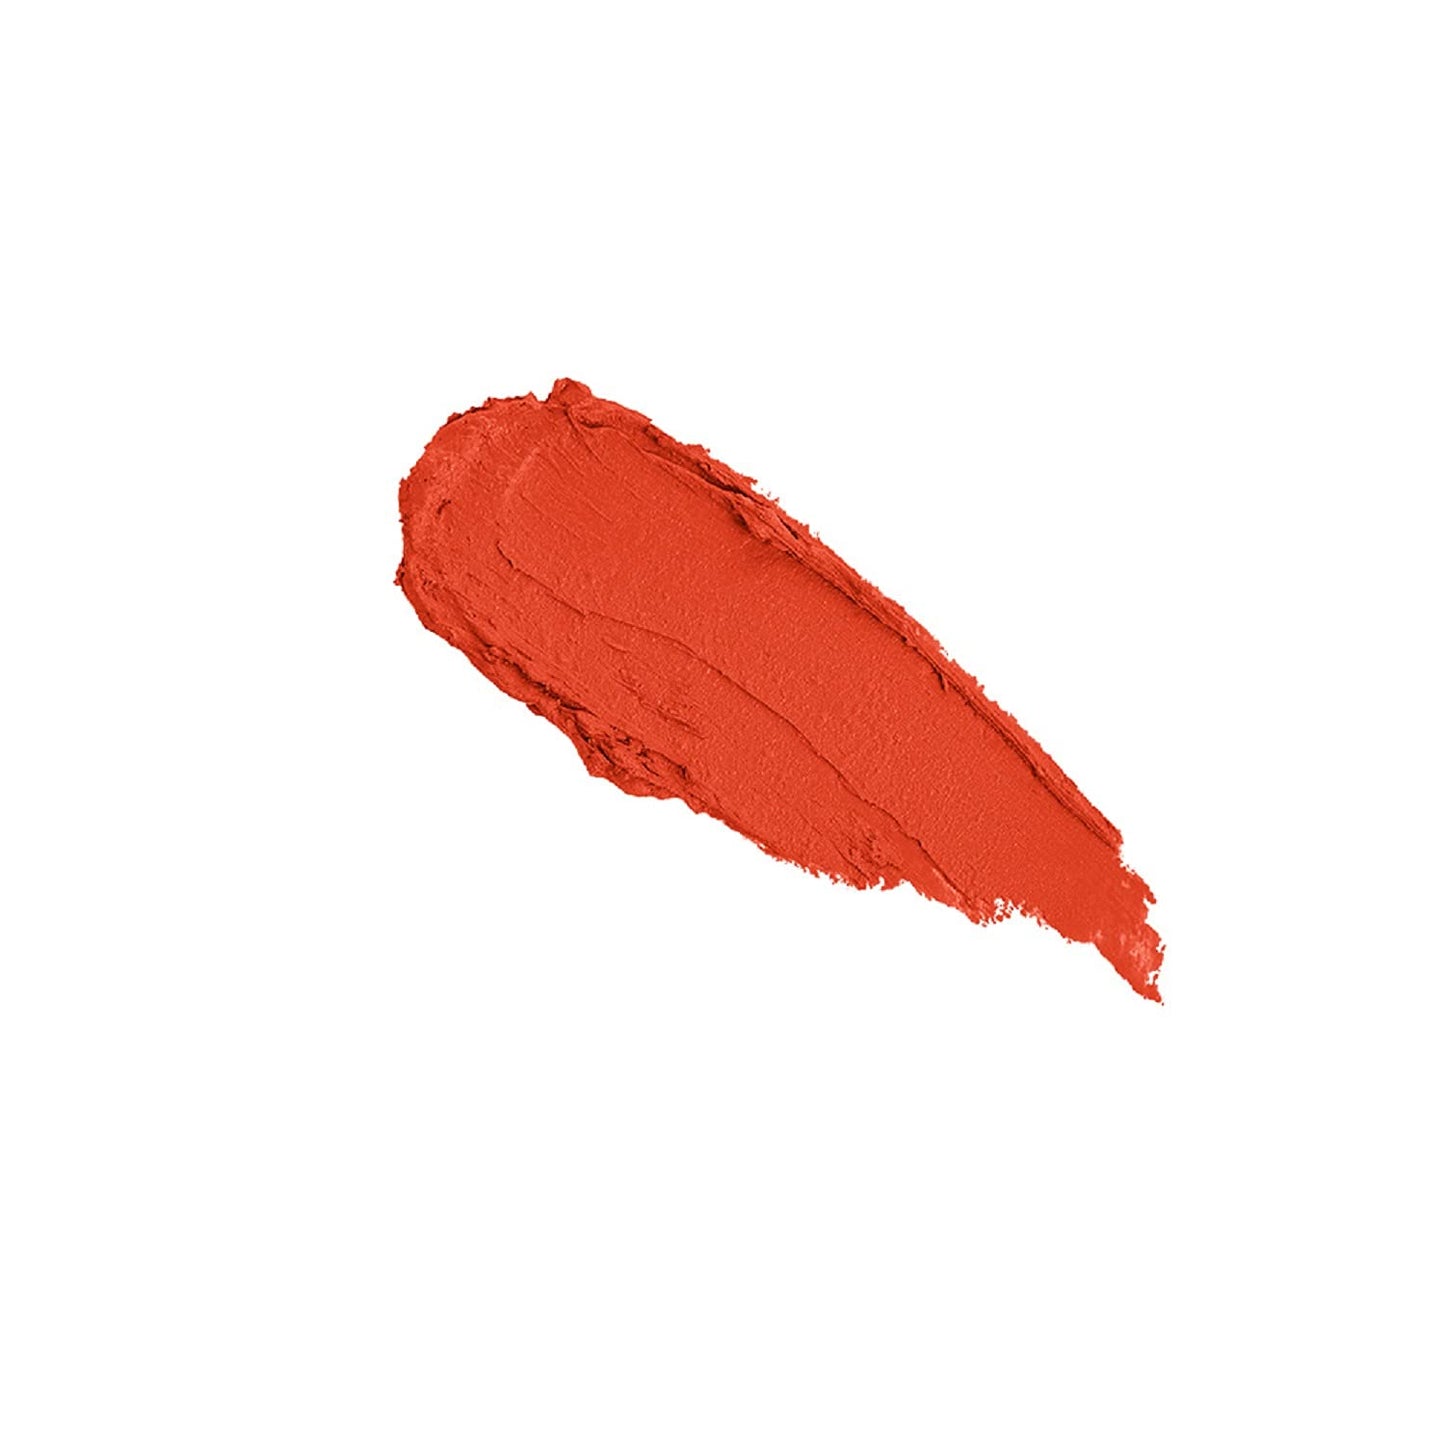 Blue Heaven Powder Matte Lipstick, Waterproof, Longlasting, 001, Feiry Orange, 3.5gm